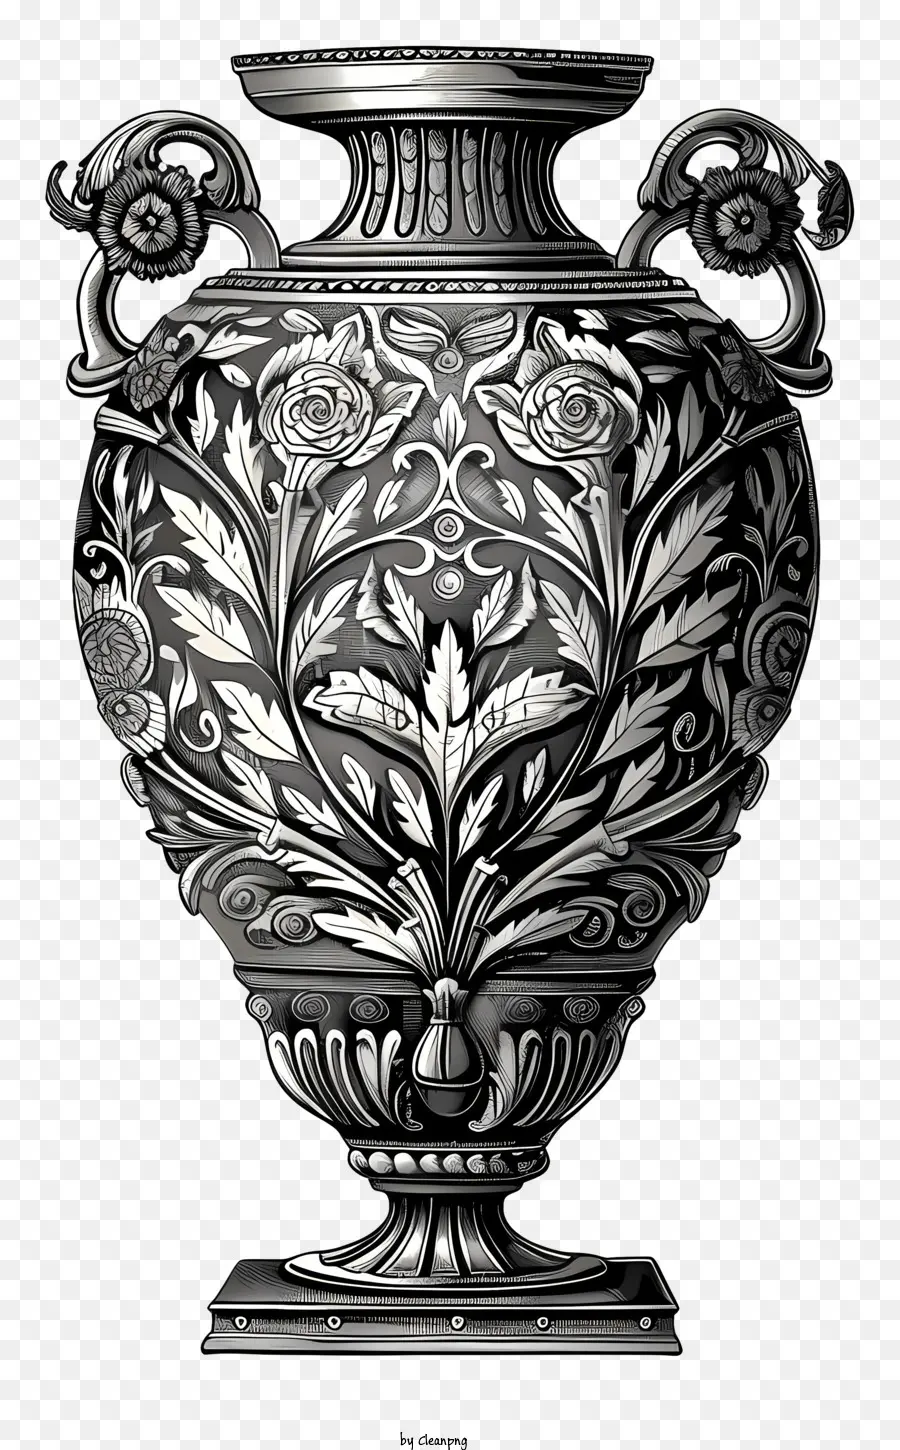 Römische Vase Silbervase verziertes Design Blumenmuster komplizierte Details - Schwarz -Weiß -Illustration einer verzierten silbernen Vase